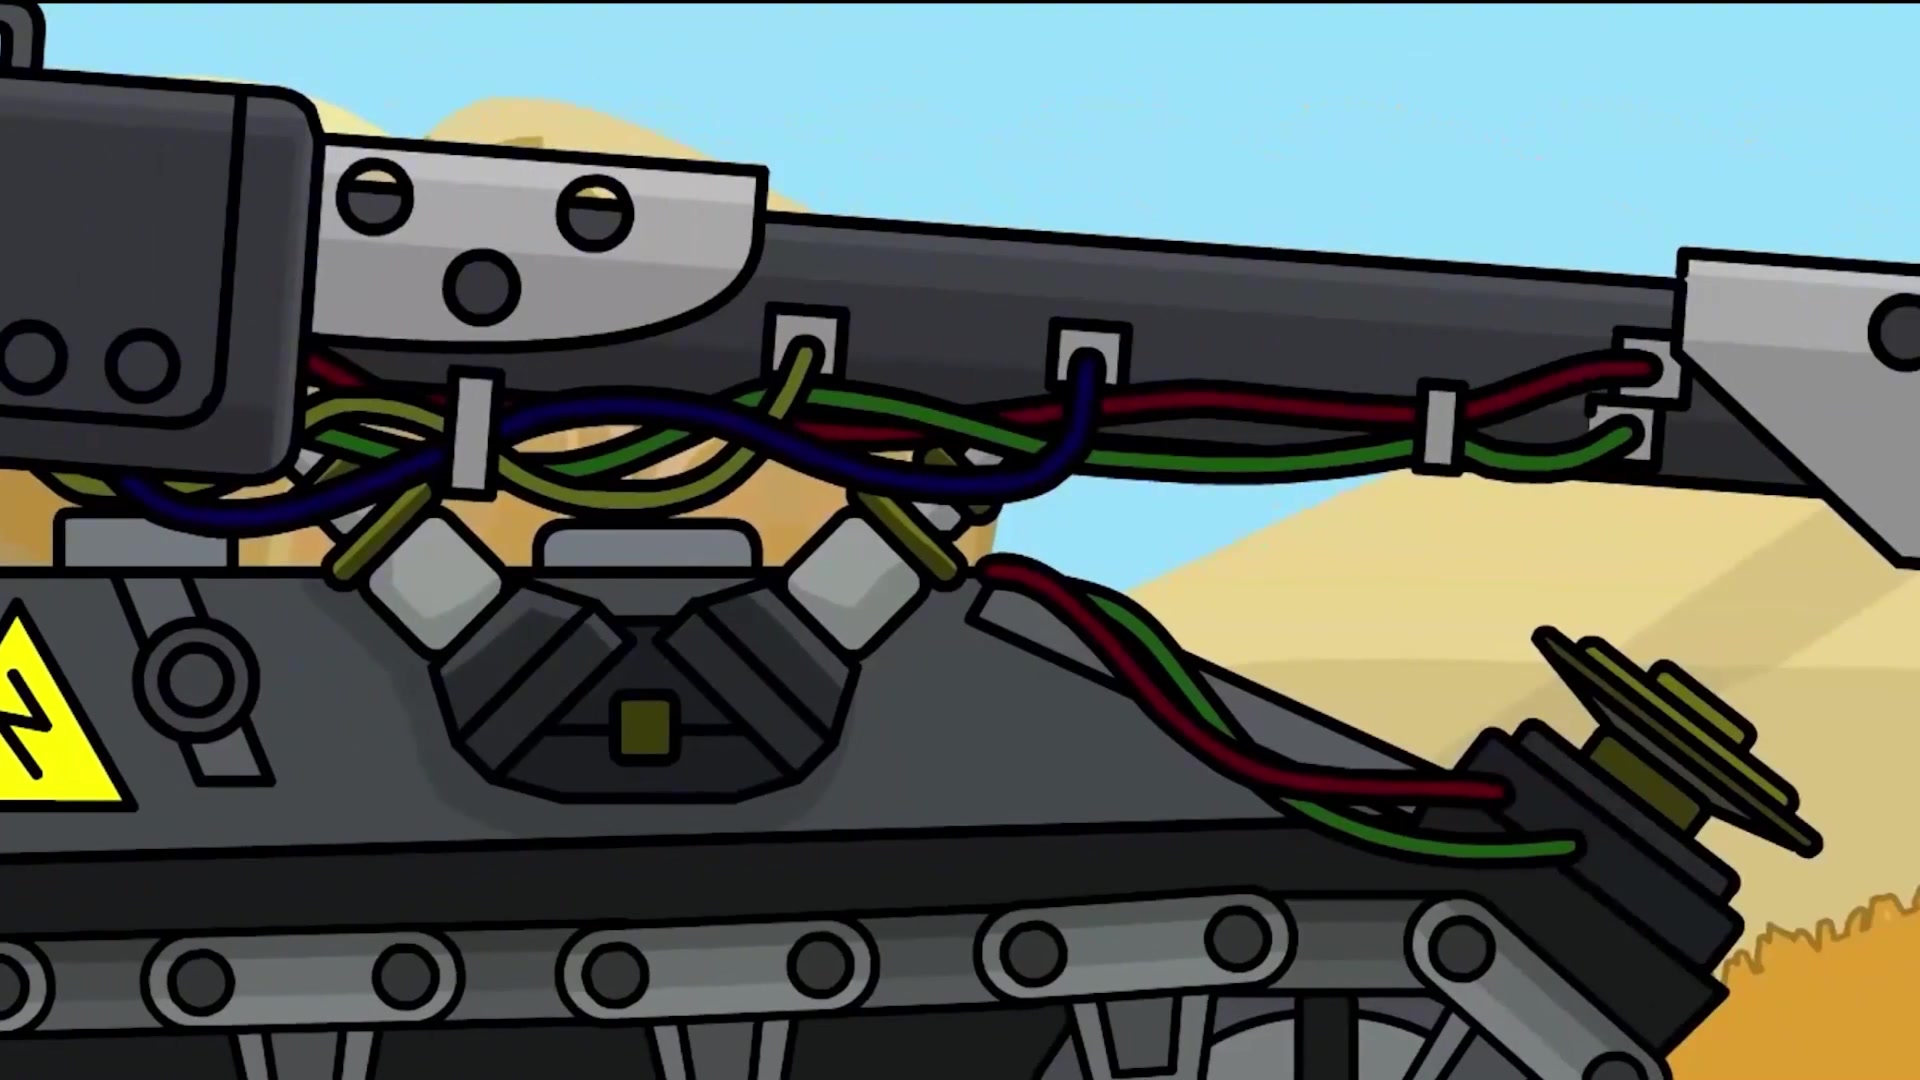 坦克动画:激光炮坦克太霸道了,动起手了拳拳到肉